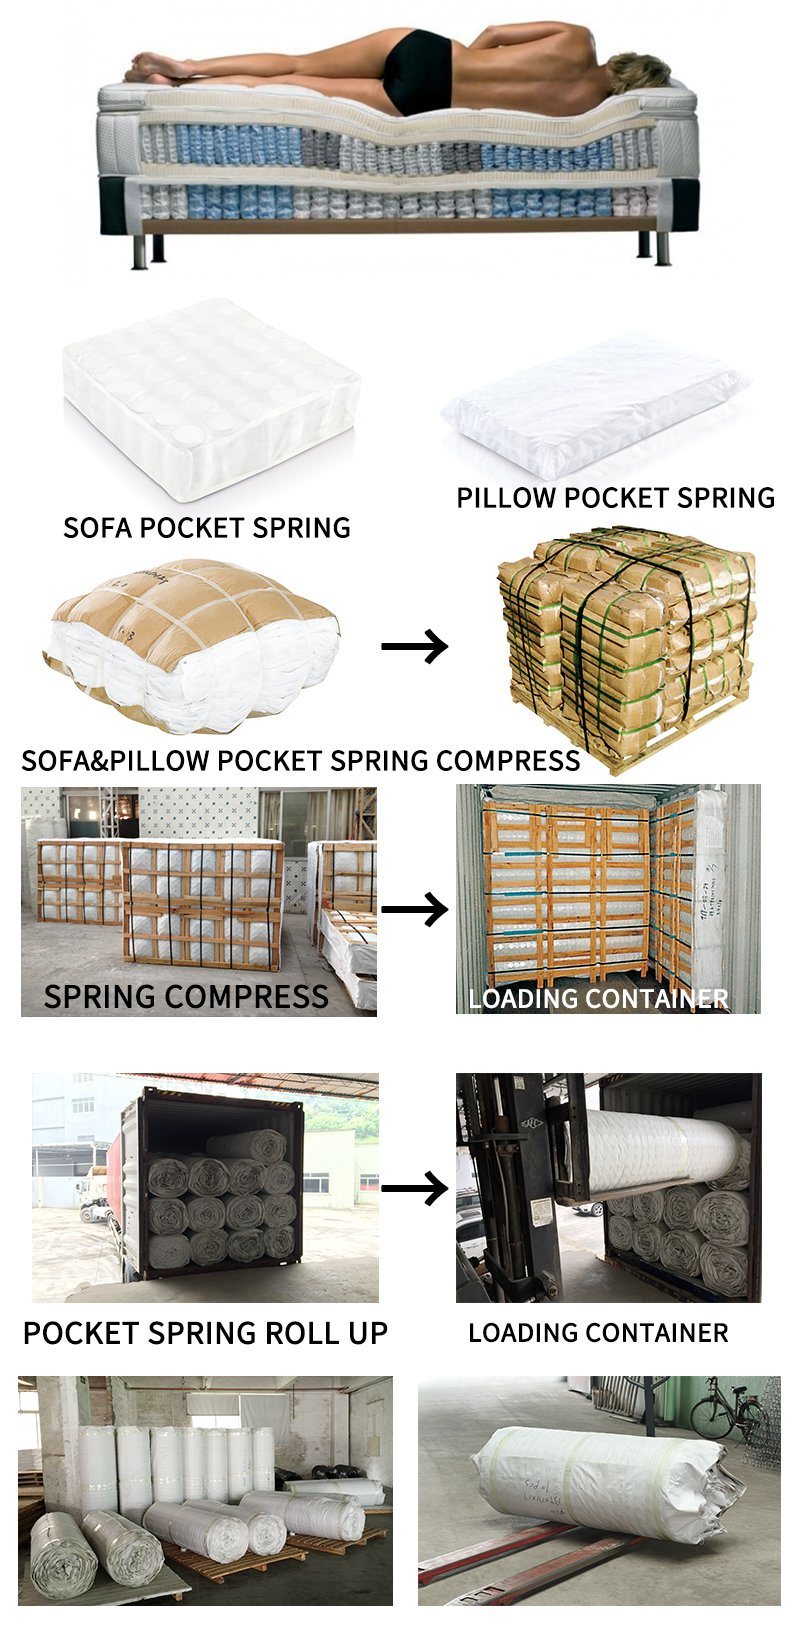 Mattress Supplier Provide Mattress Material Pocket Spring for Mattress